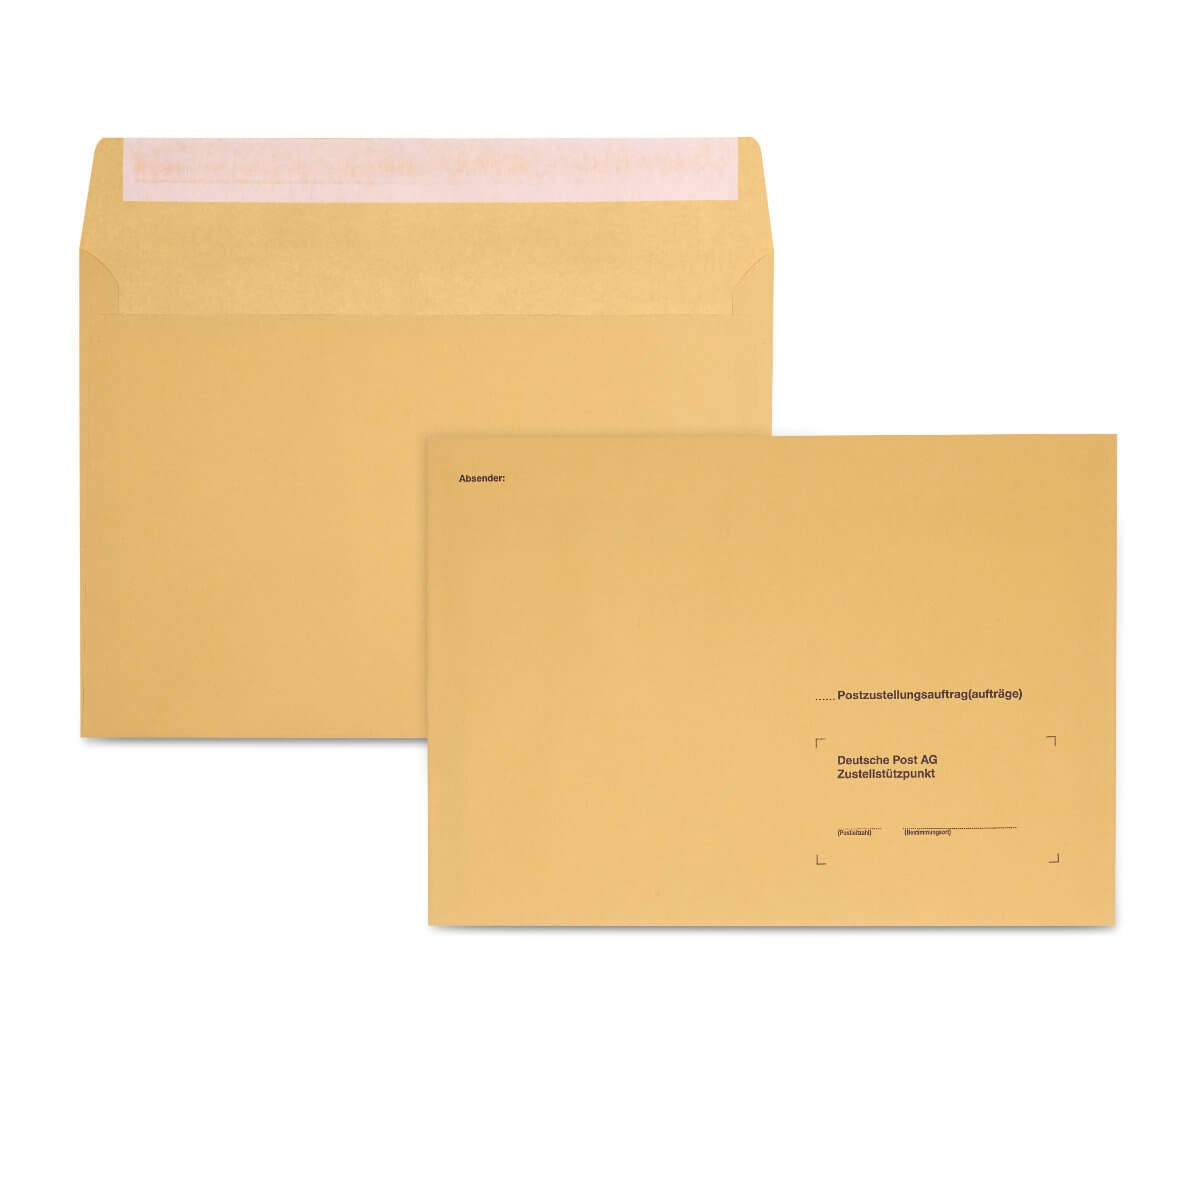 100-weiss alle Board Briefumschläge Karton starke Mailer-c5 Größe 